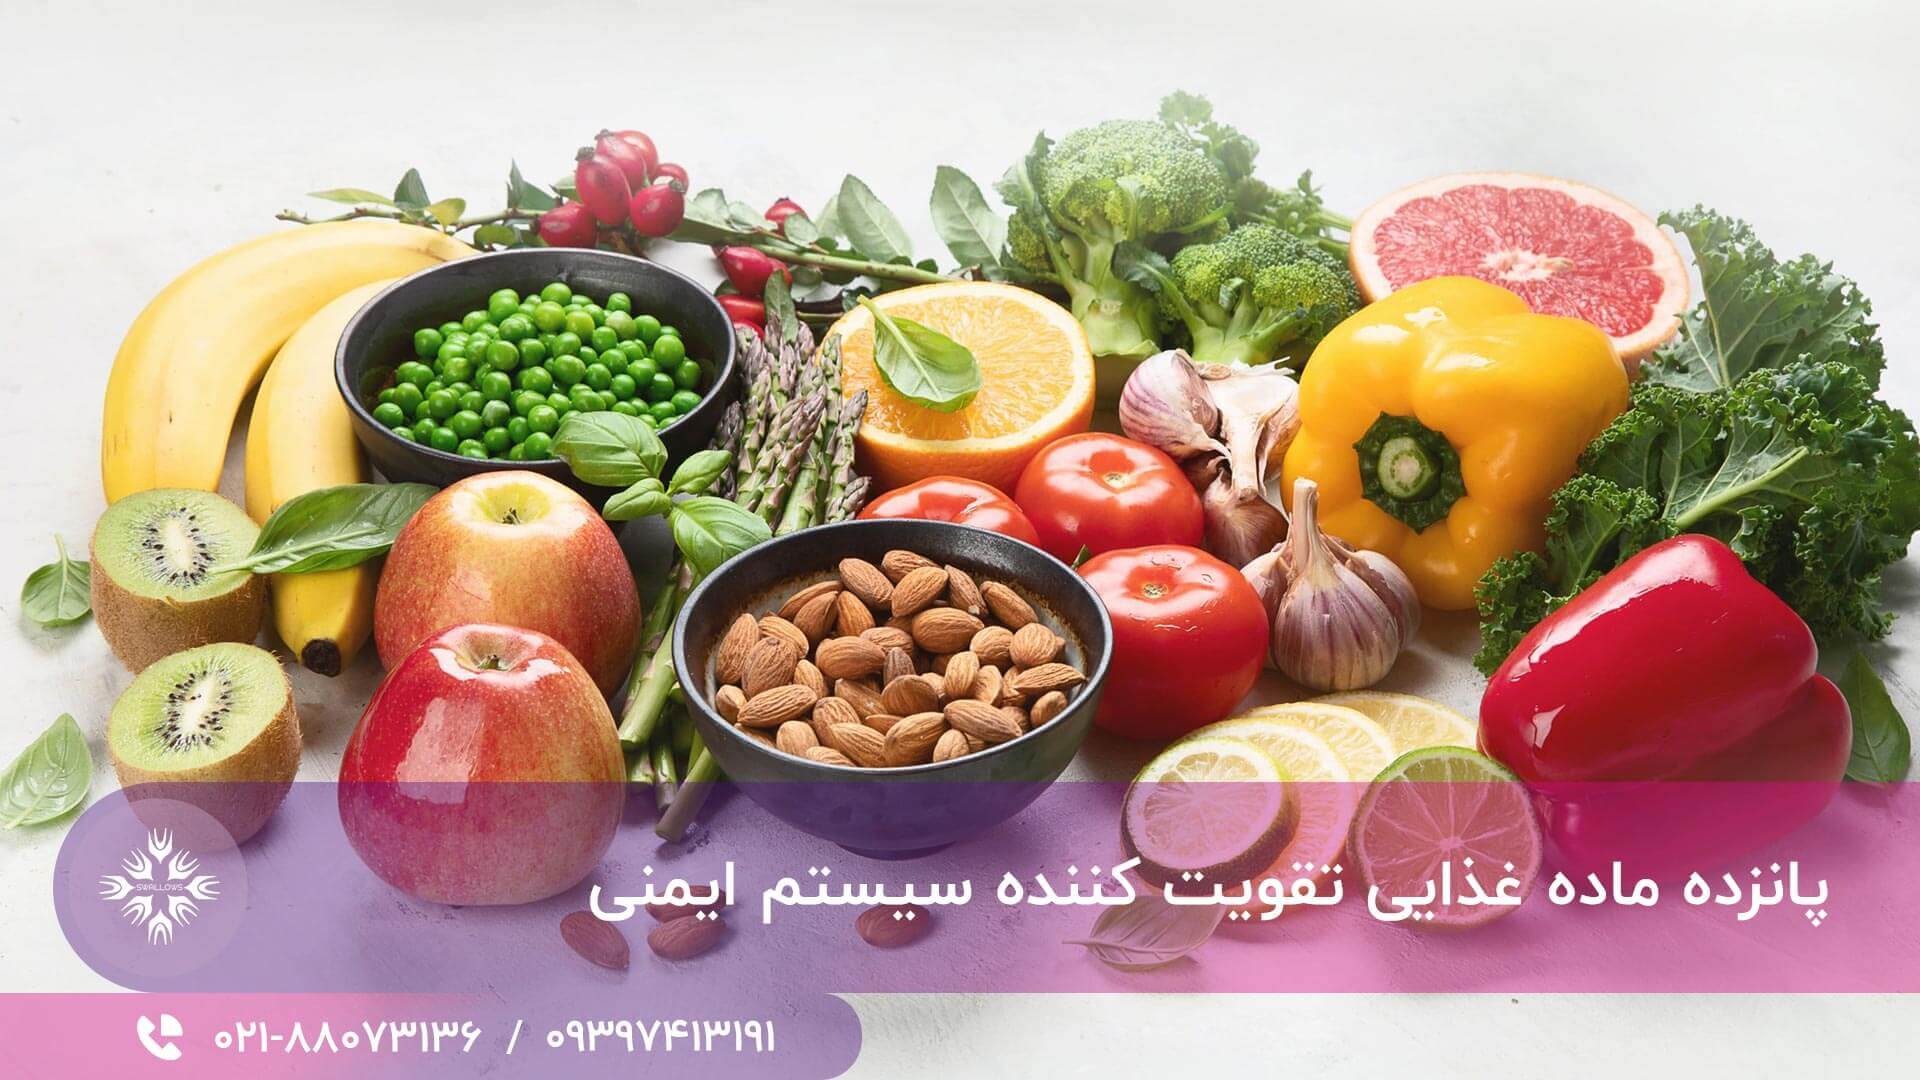 15 ماده غذایی تقویت کننده سیستم ایمنی